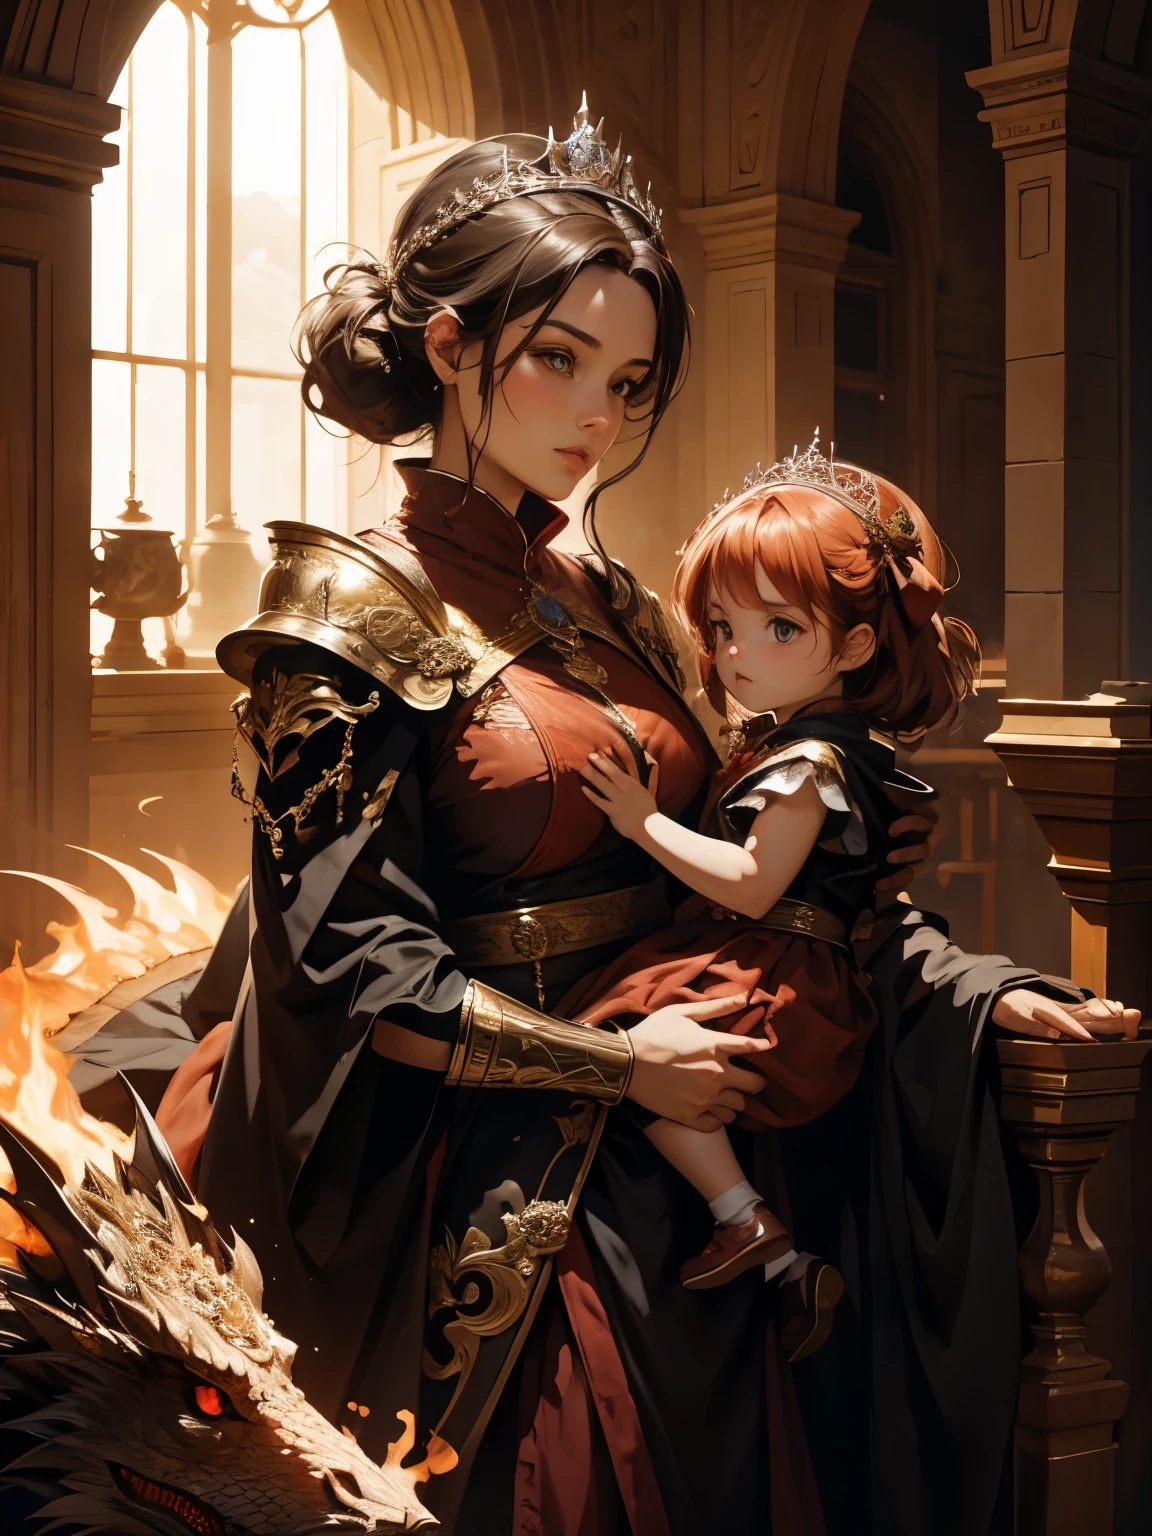 (melhor qualidade), (Alto detalhe), a linda rainha dos dragões com seu dragão mais amado segurando sua filha, (fogo vermelho 1:1), hdr, Ultra HD, 4K, 8K, 3D.